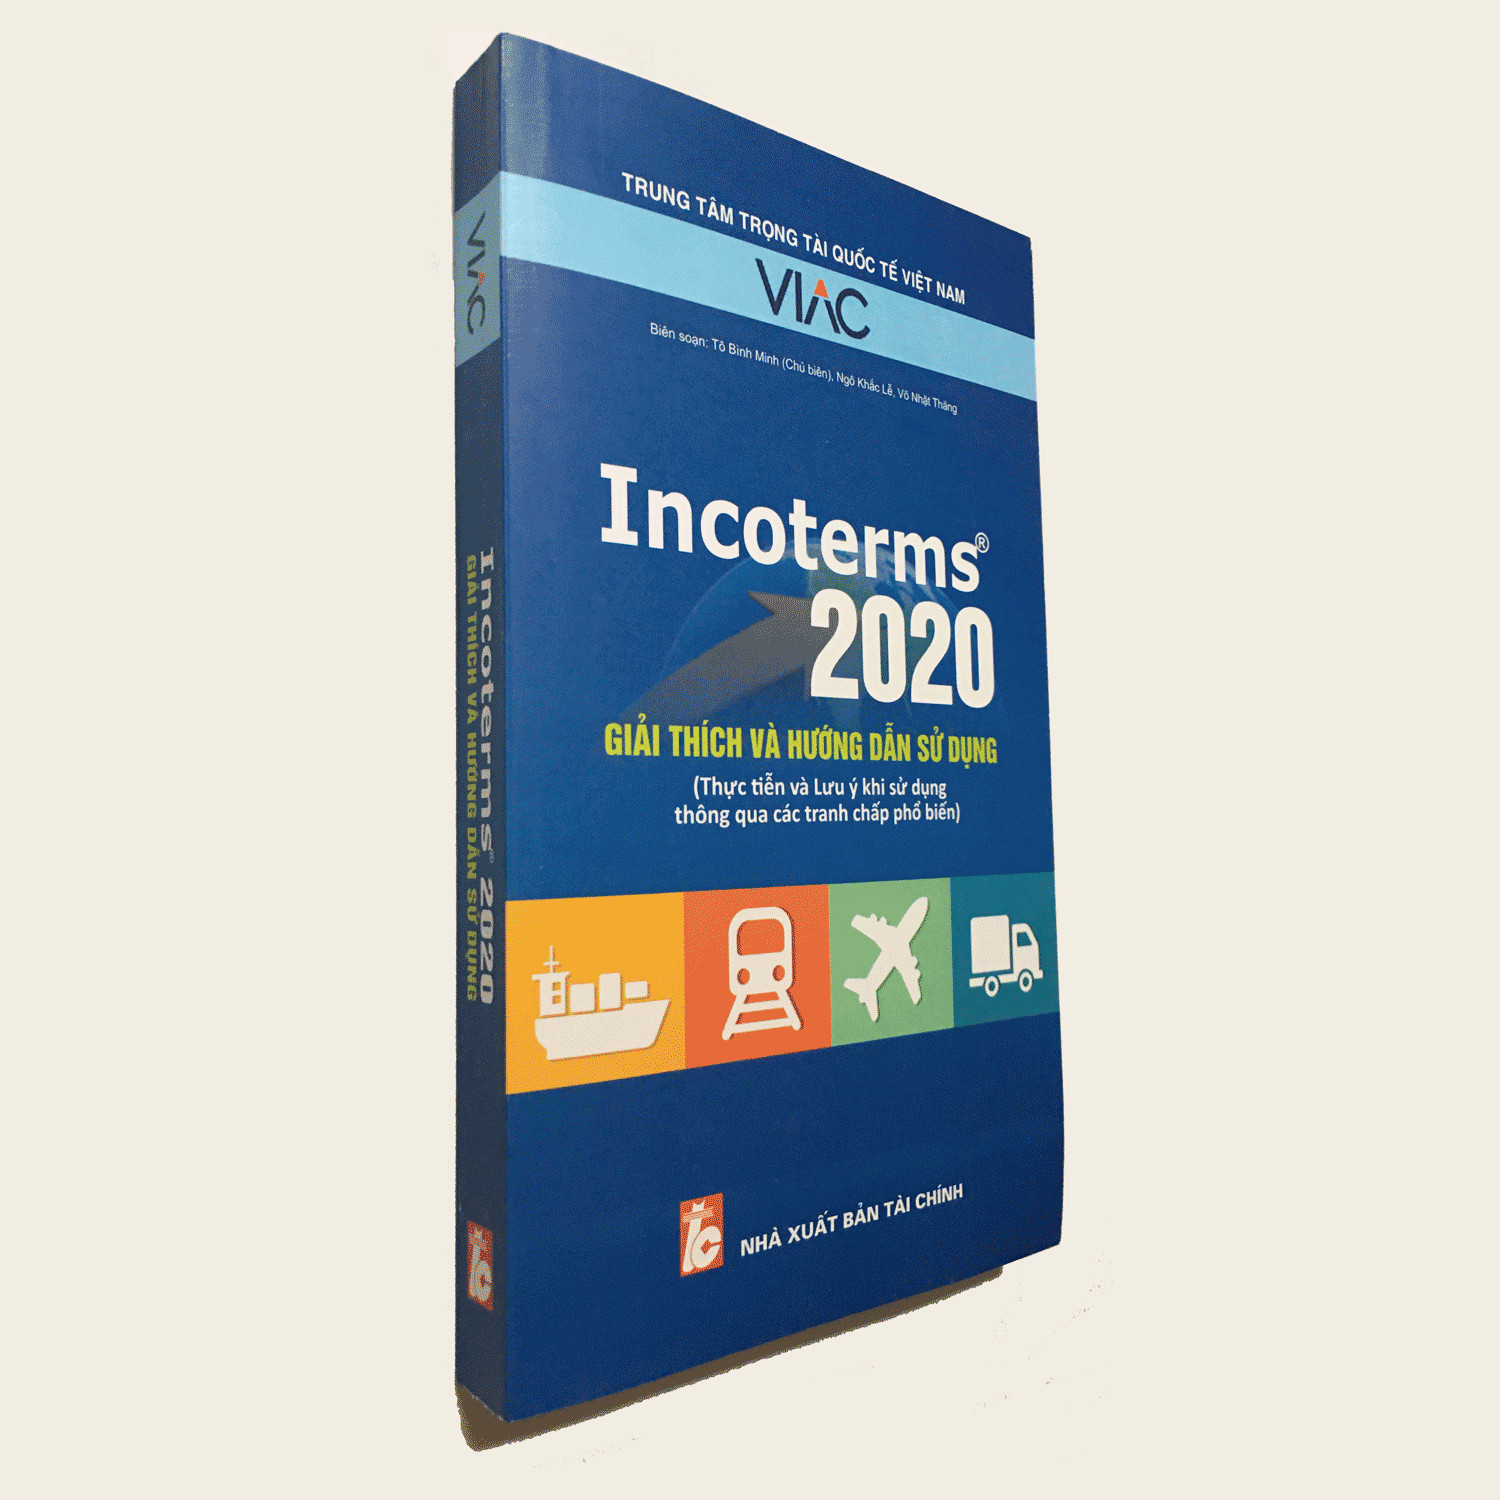 Incoterms 2020 - giải thích và hướng dẫn sử dụng (Thực tiễn và Lưu ý khi sử dụng thông qua các tranh chấp phổ biến)